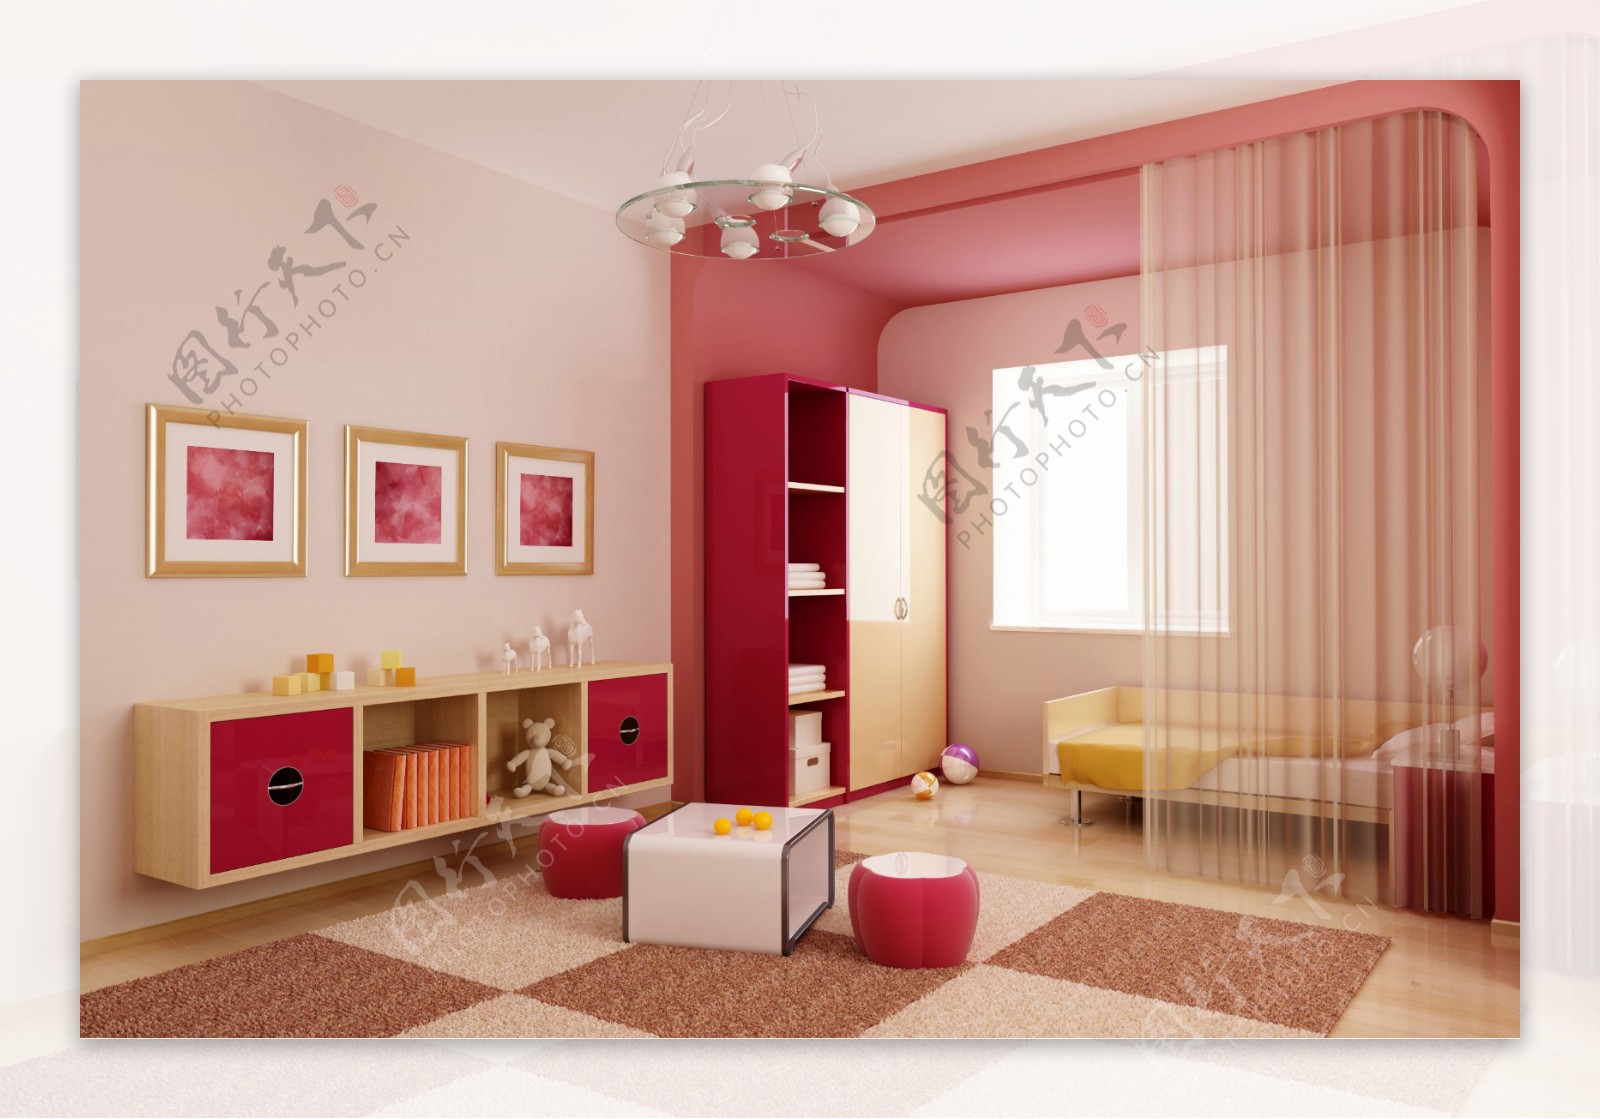 粉色温馨的客厅图片